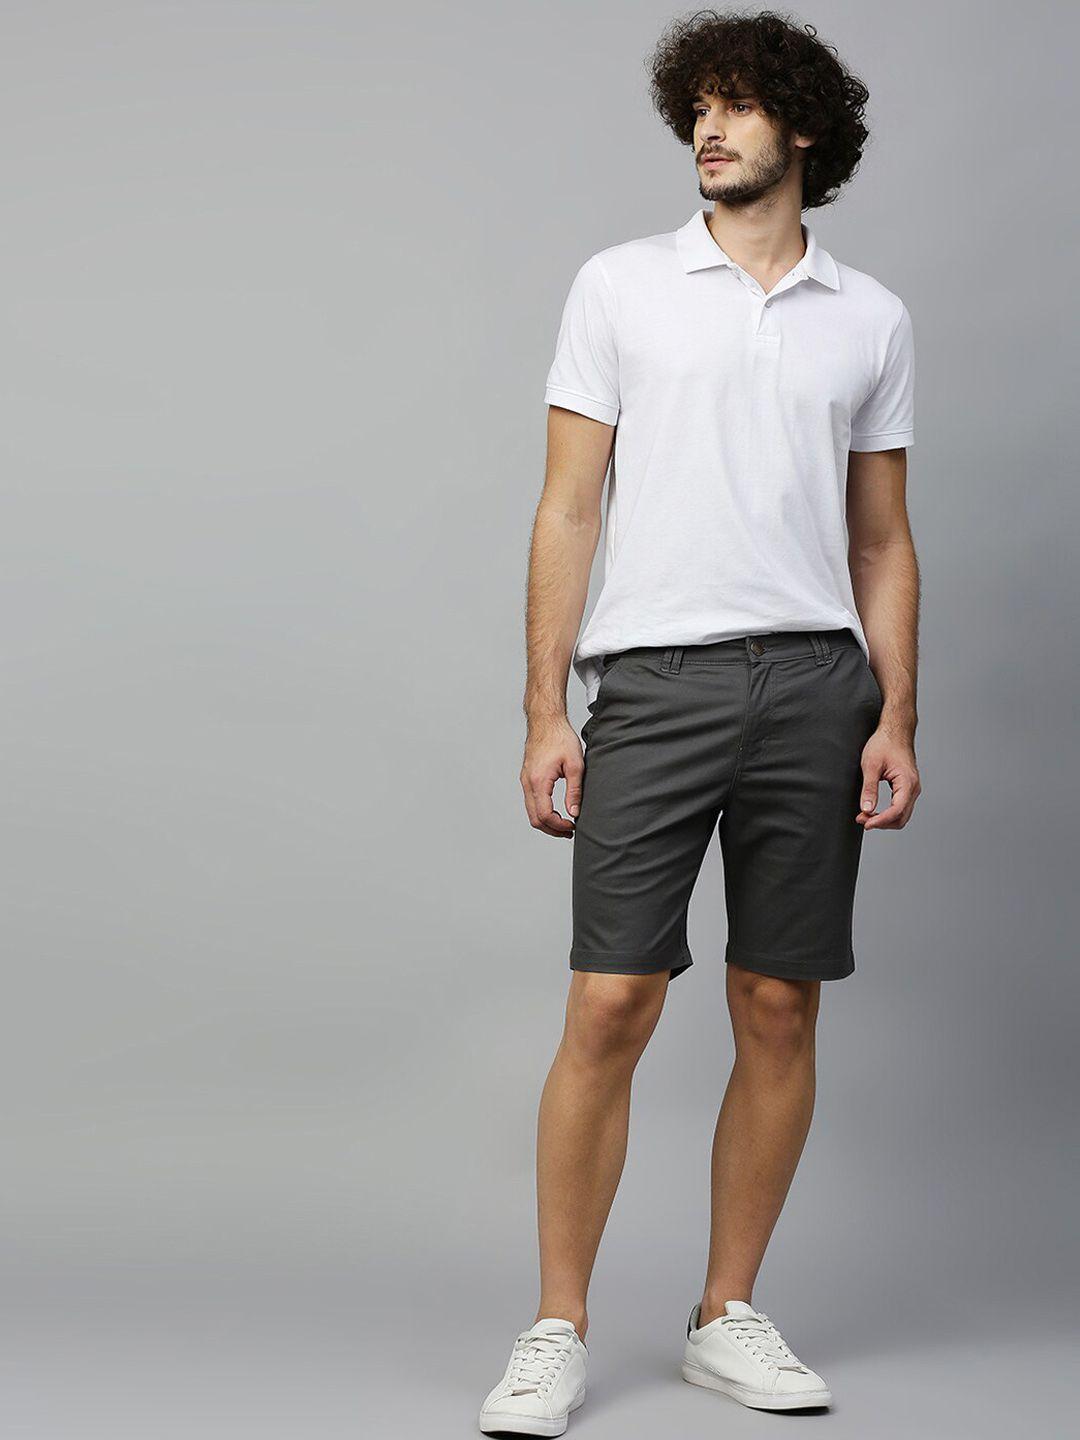 hubberholme-men-charcoal-grey-chino-shorts